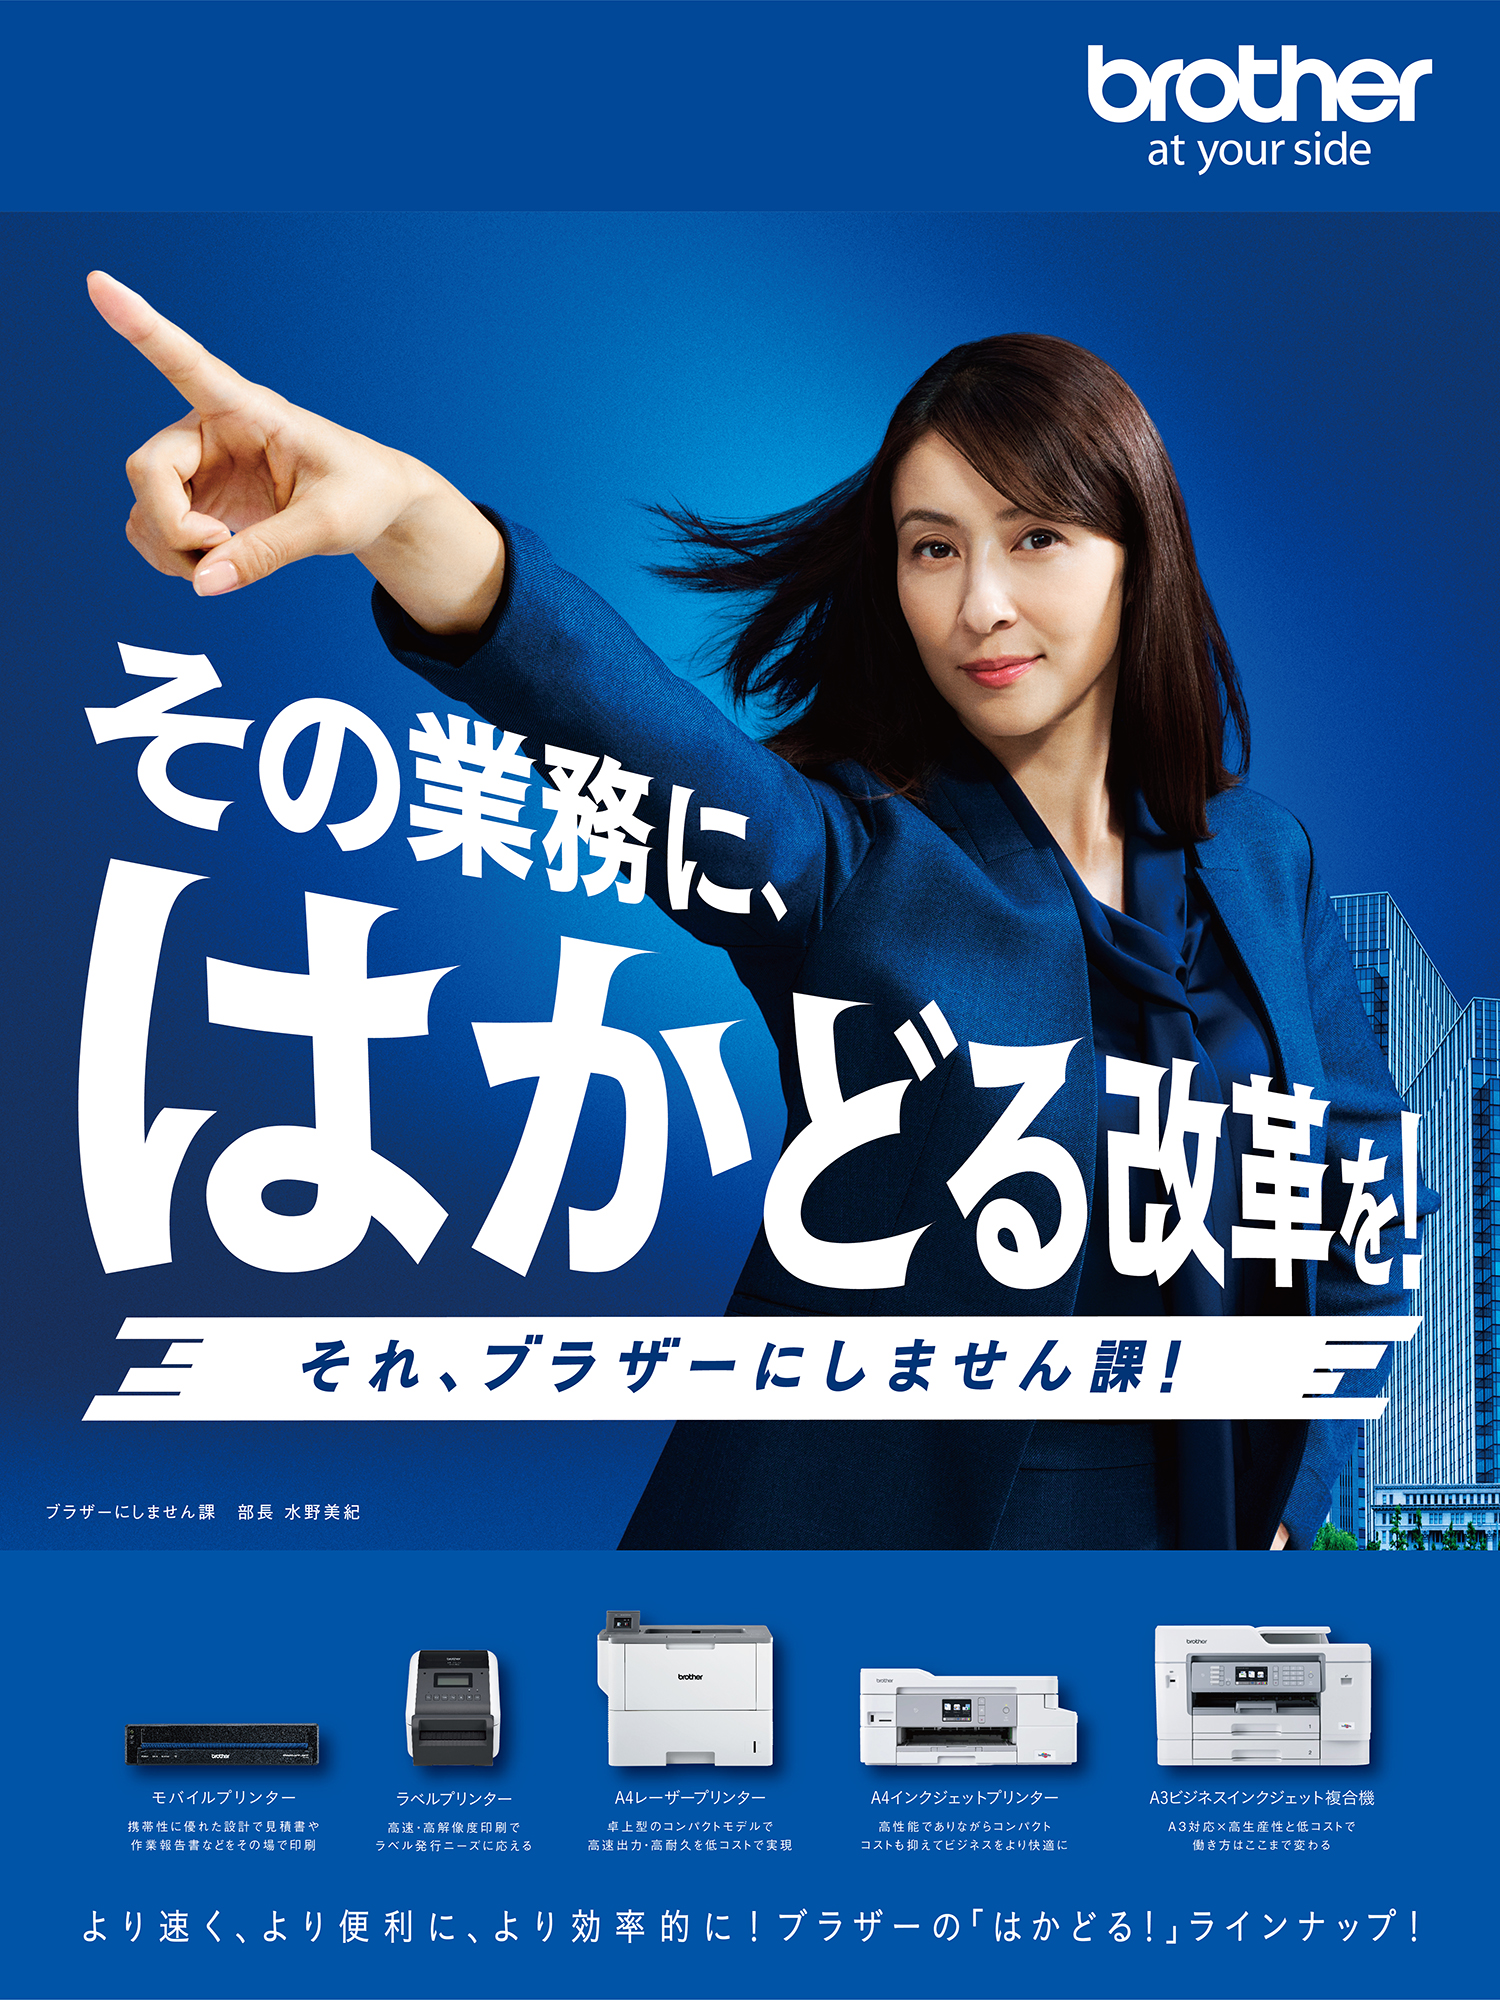 ブラザー イメージキャラクターに女優の 水野美紀 さんを起用 ブラザー工業株式会社のプレスリリース